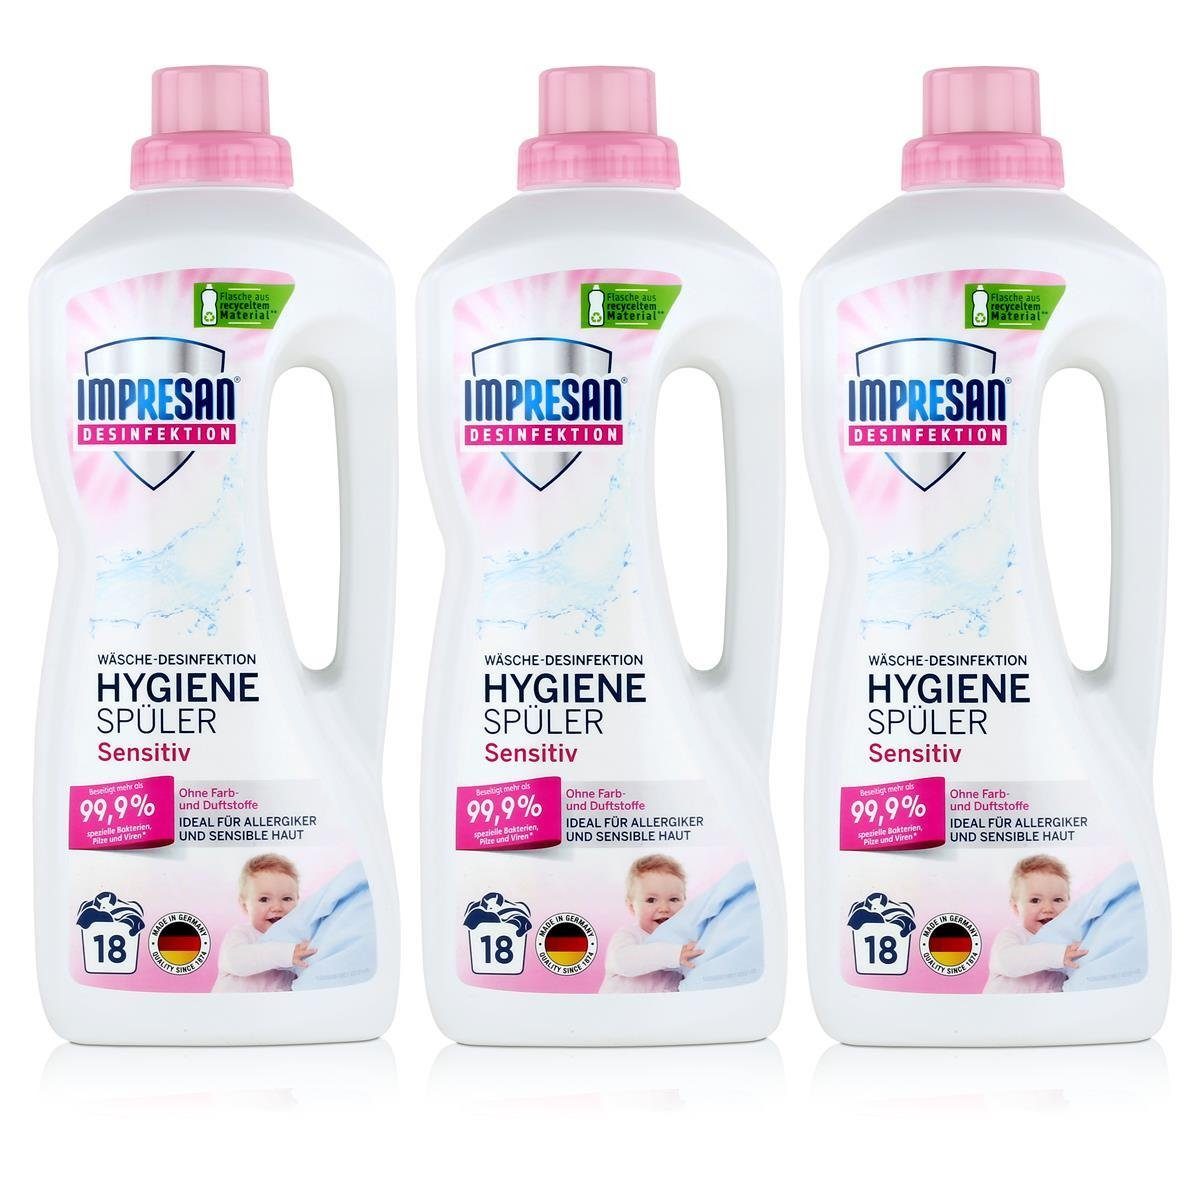 IMPRESAN Impresan Desinfektion Frei und von Farbstoffen Spezialwaschmittel Hygienespüler 1,5 Duft